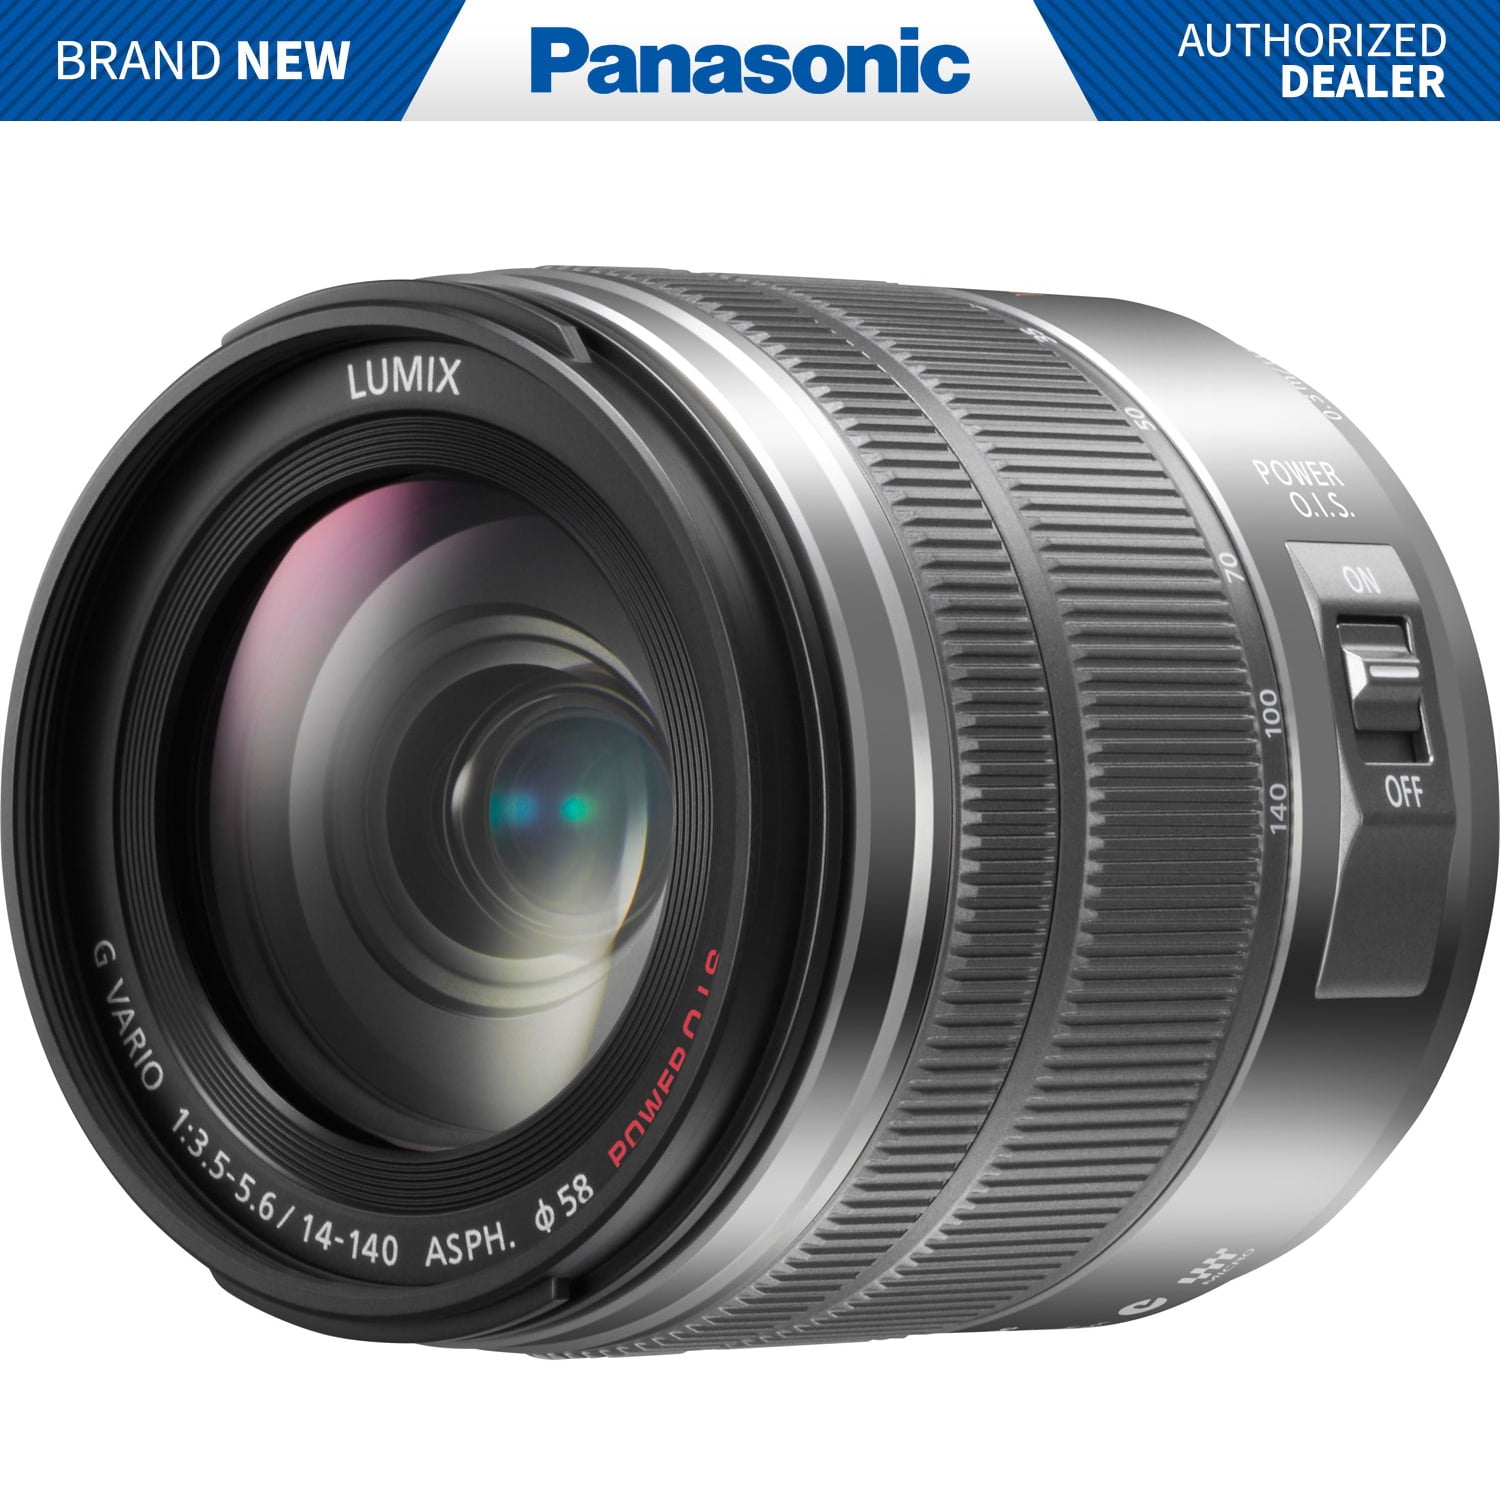 Panasonic Lumix H-FS14140 - Zoom lens - 14 mm - 140 mm f/3.5-5.6 G VARIO ASPH - Micro Four Thirds - for Lumix DC-BGH1; Lumix G DC-G100, G110, G90, GF90, GH5M2,